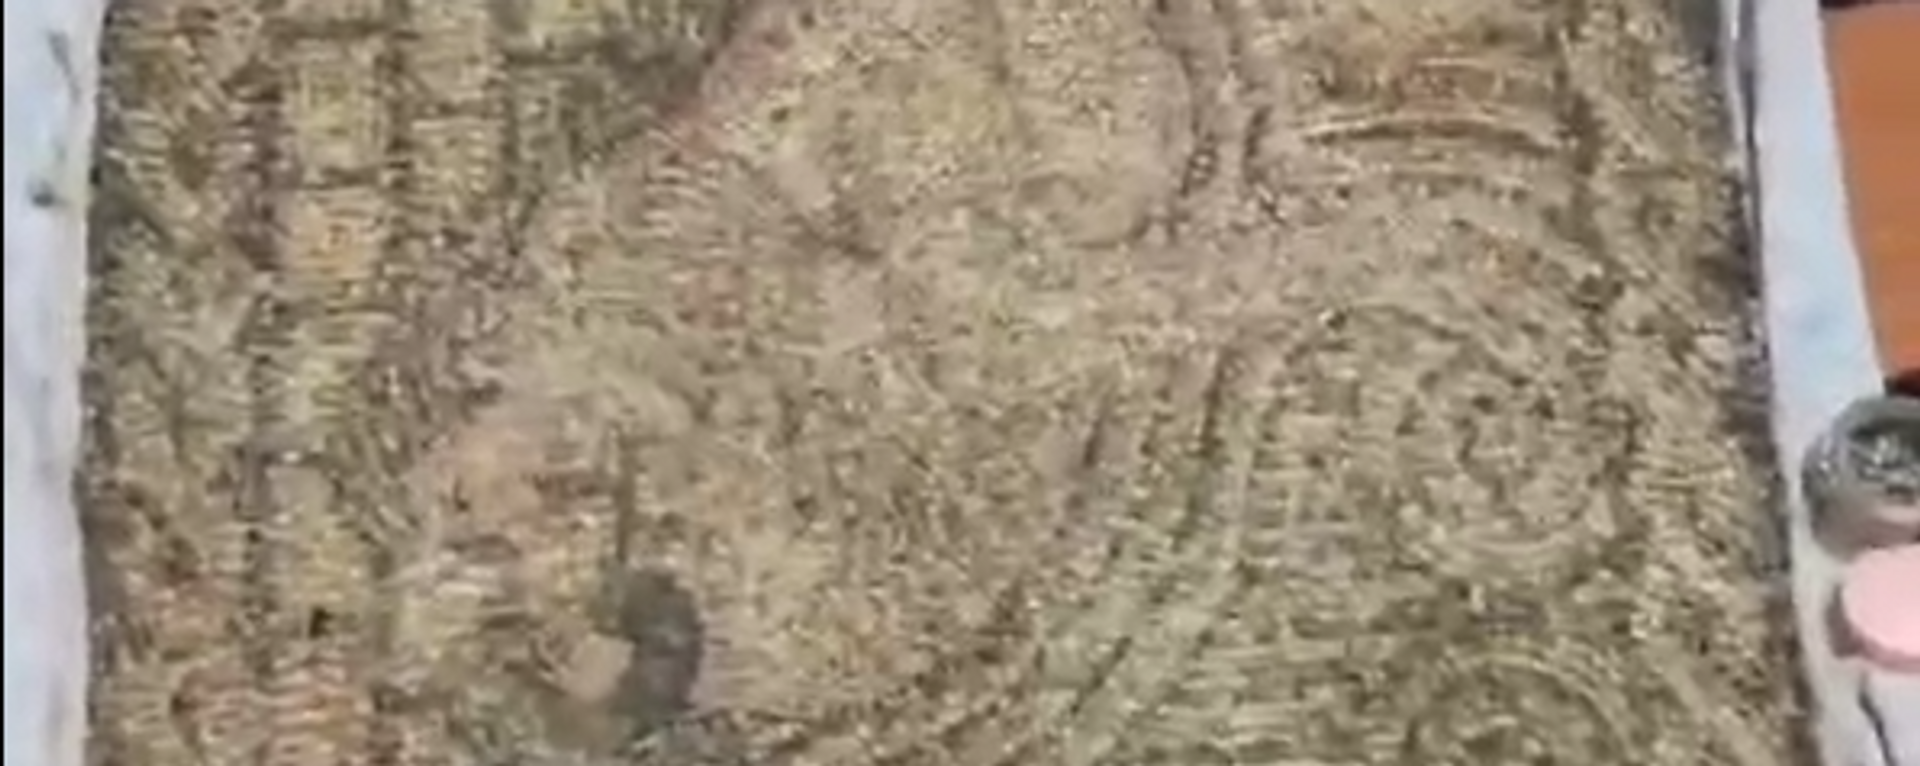  Yalova’da Suriye’den kaçak yollarla Türkiye sokulduğu değerlendirilen Roma dönemine ait “taş mozaik tablo” ele geçirilirken 1 kişi gözaltına alındı. - Sputnik Türkiye, 1920, 02.01.2024